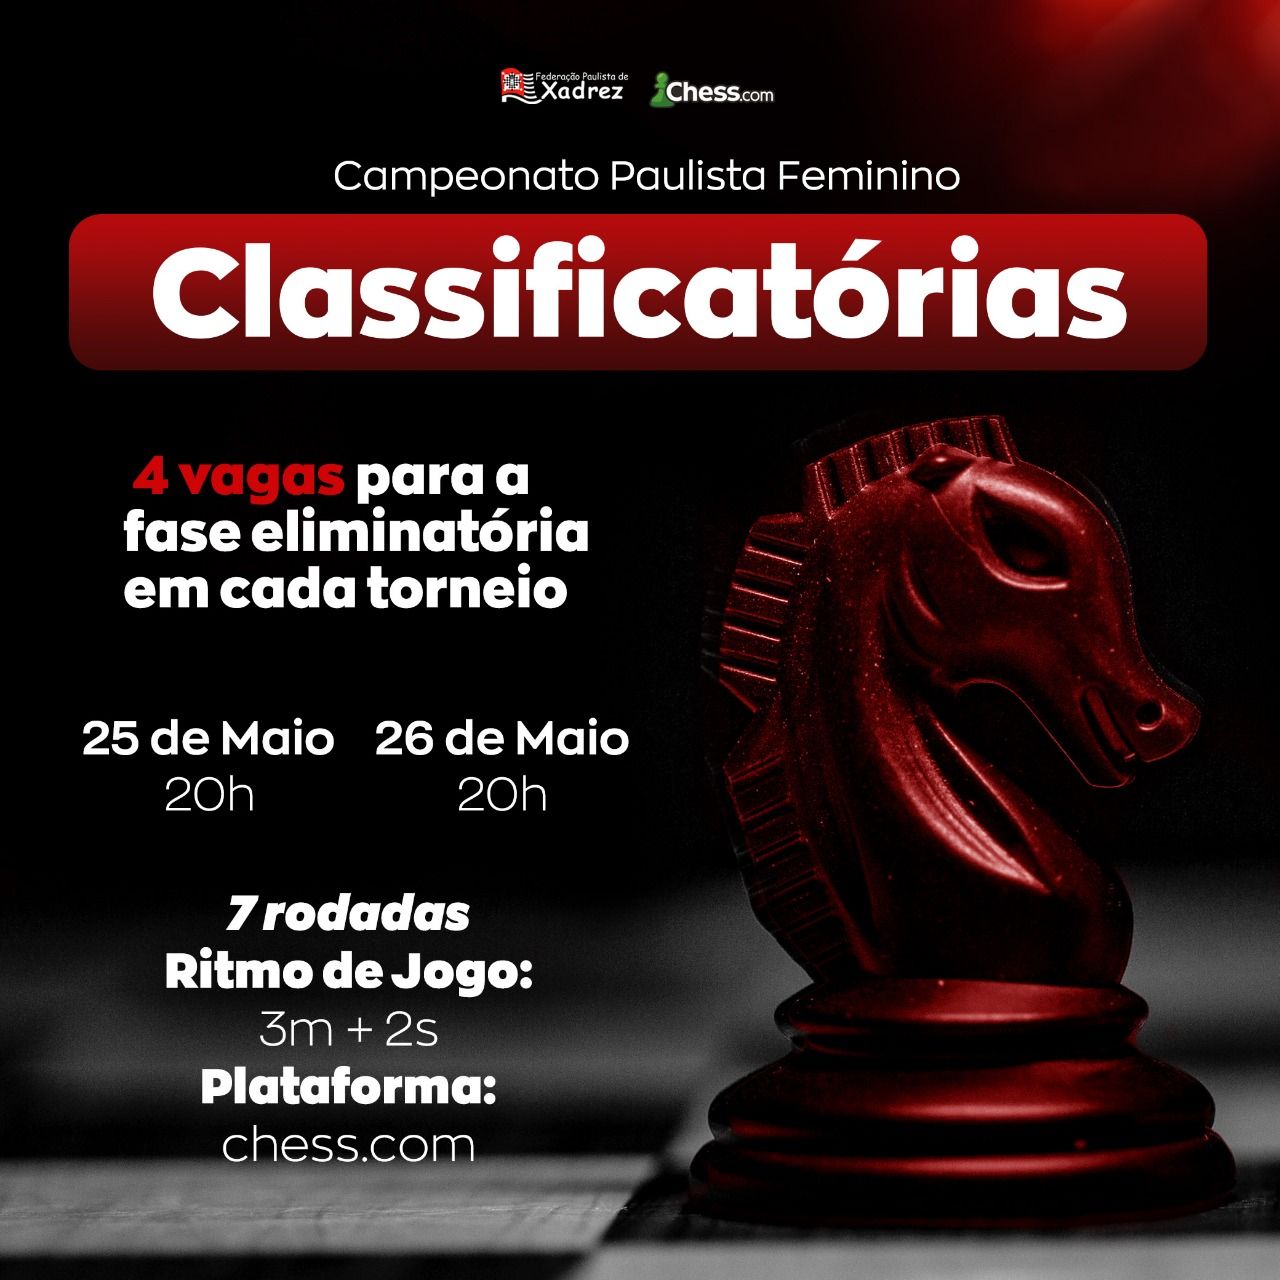 Federação Paulista de Xadrez - 👉 É Hoje! O evento será transmitido nos  canais da twitch da WFM Julia Alboredo e GM Krikor Mekhitarian a partir das  19h horário de Brasília 🎗